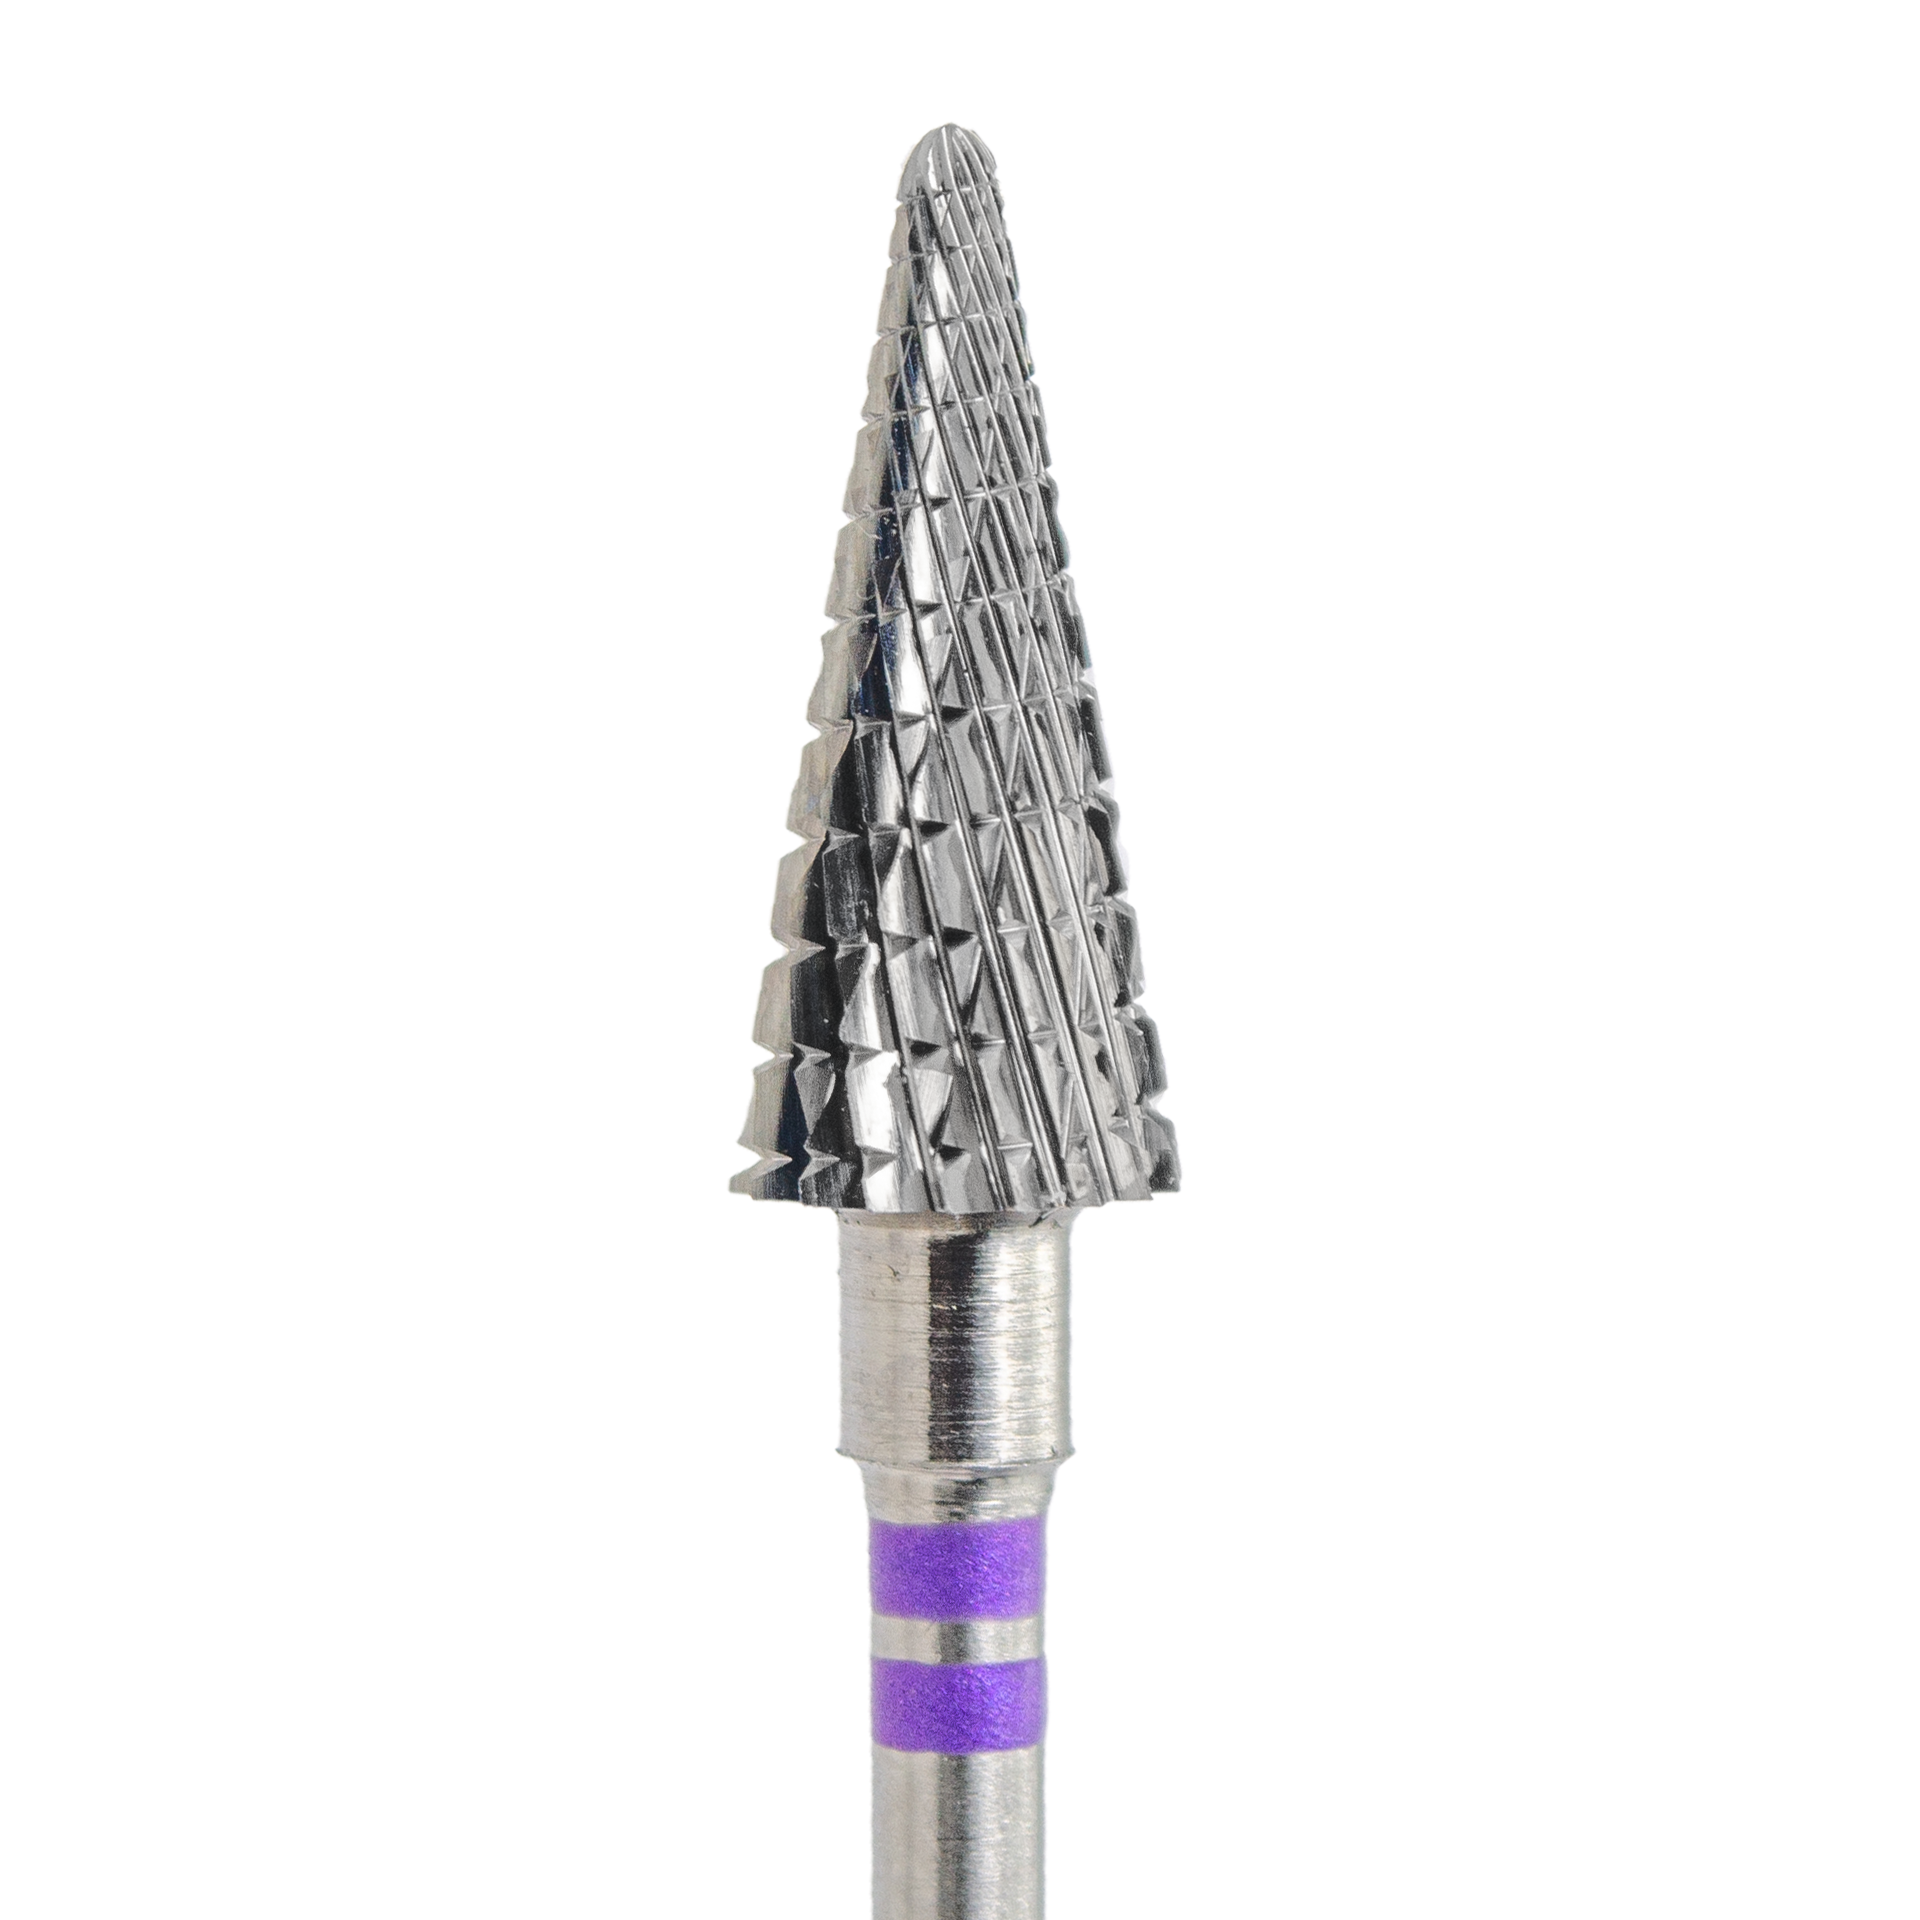 KMIZ Tungsten Carbide Cone E-File Nail Bit, 6.0mm, Purple, LEFT handed